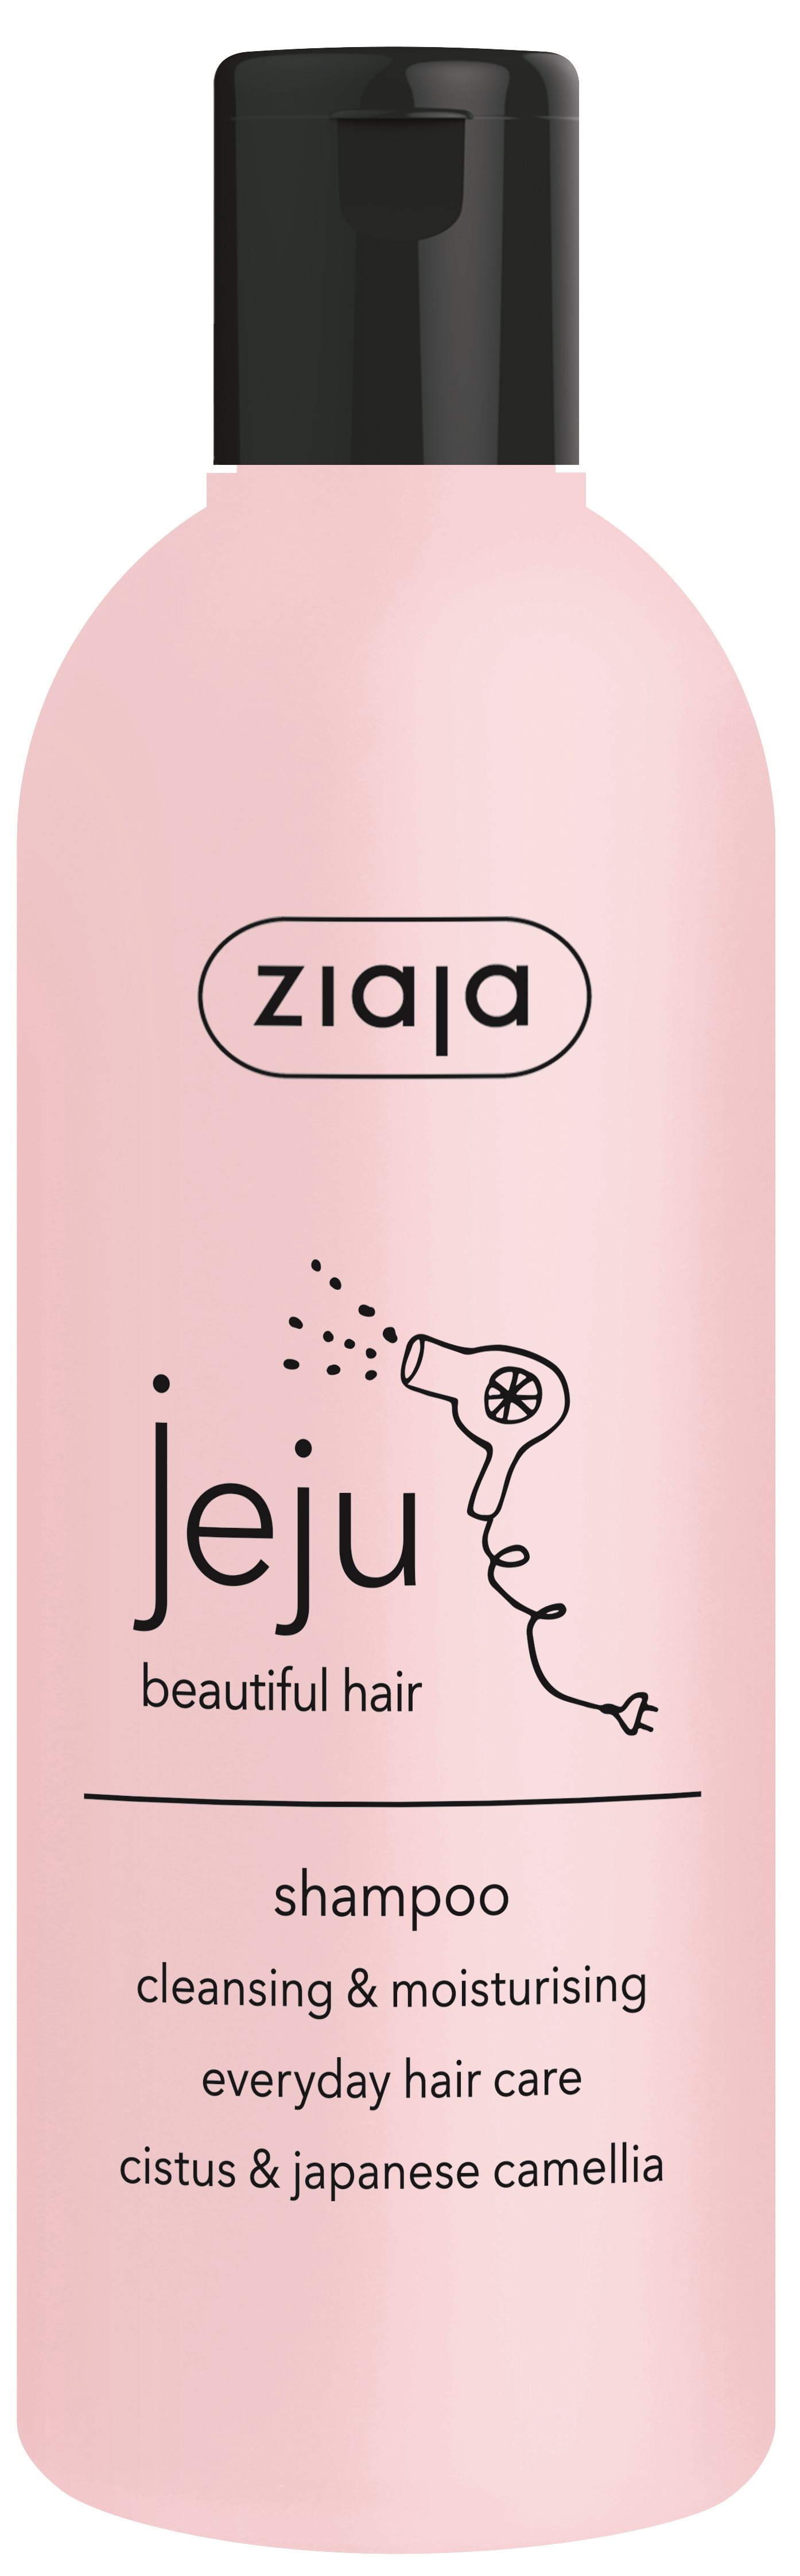 ZIAJA Jeju Tisztító & hidratáló hajsampon 300 ml